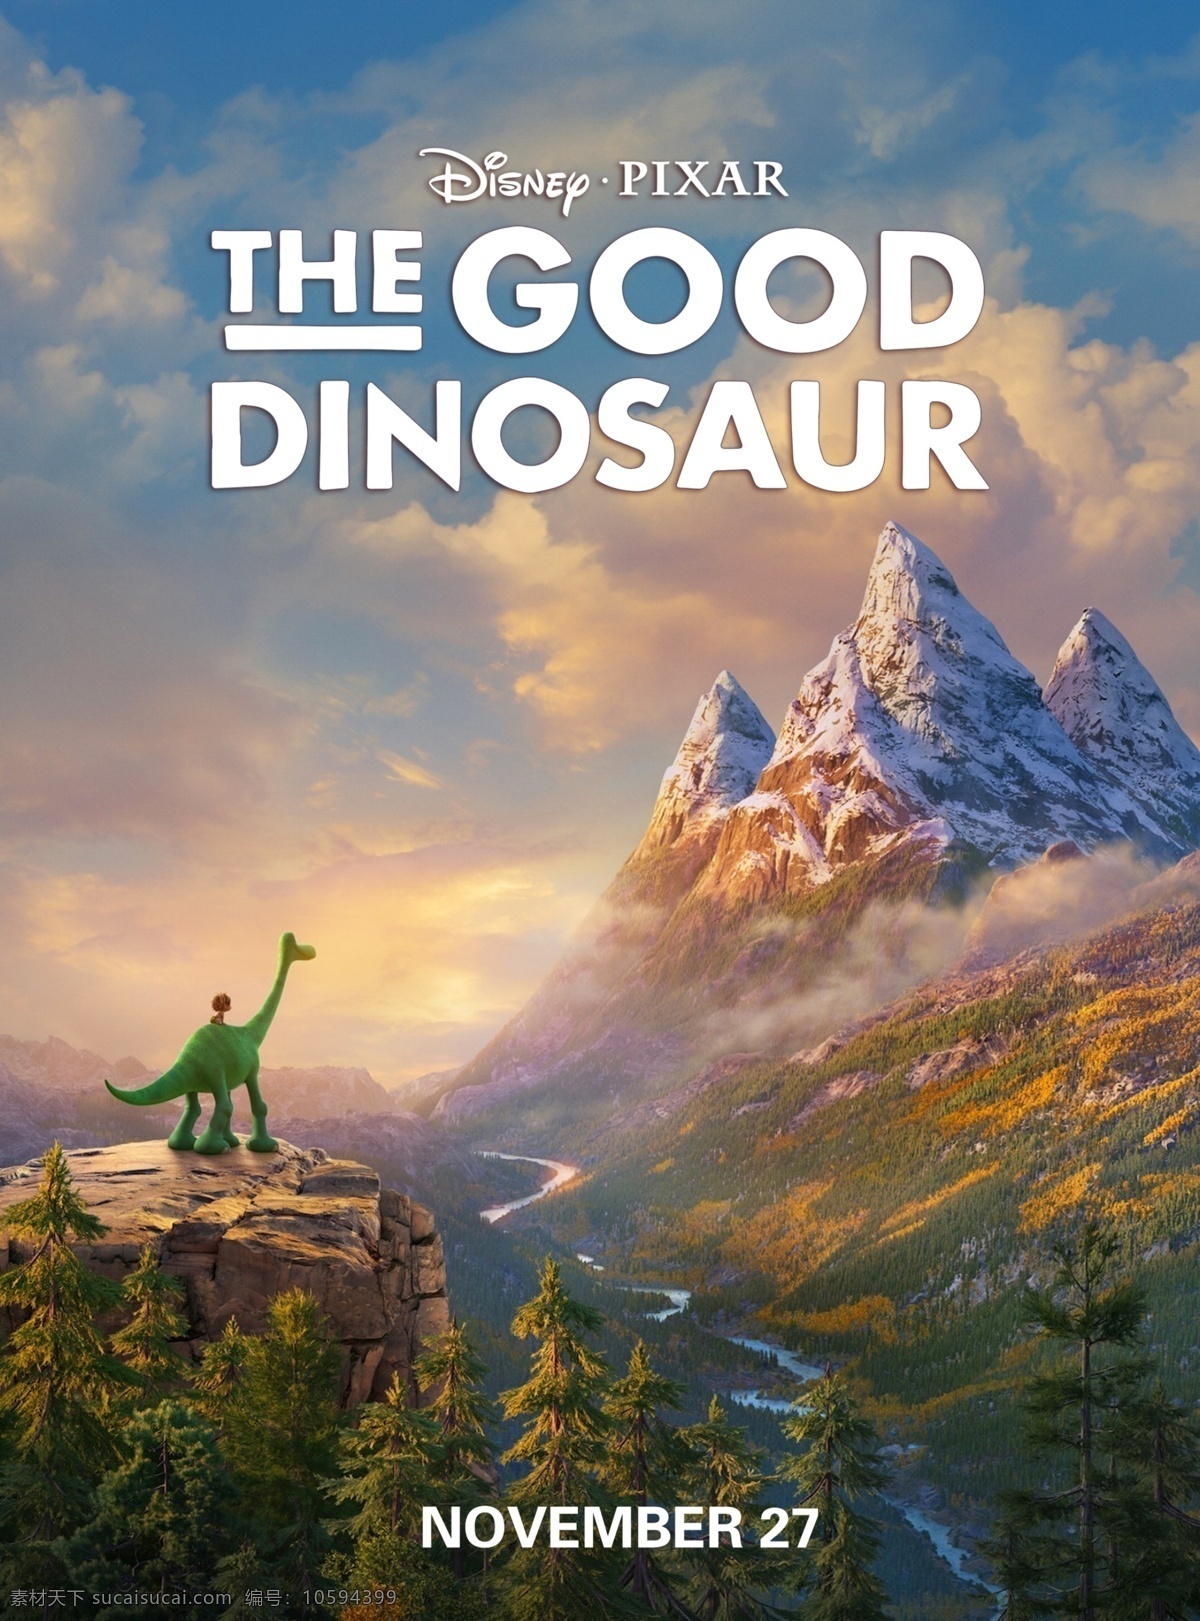 恐龙当家 恐龙与男孩 善良的恐龙 恐龙世界 好恐龙 皮克斯 动画 家庭 喜剧 场景 场景设定 卡通 动画电影 pixar 动漫动画 动漫人物